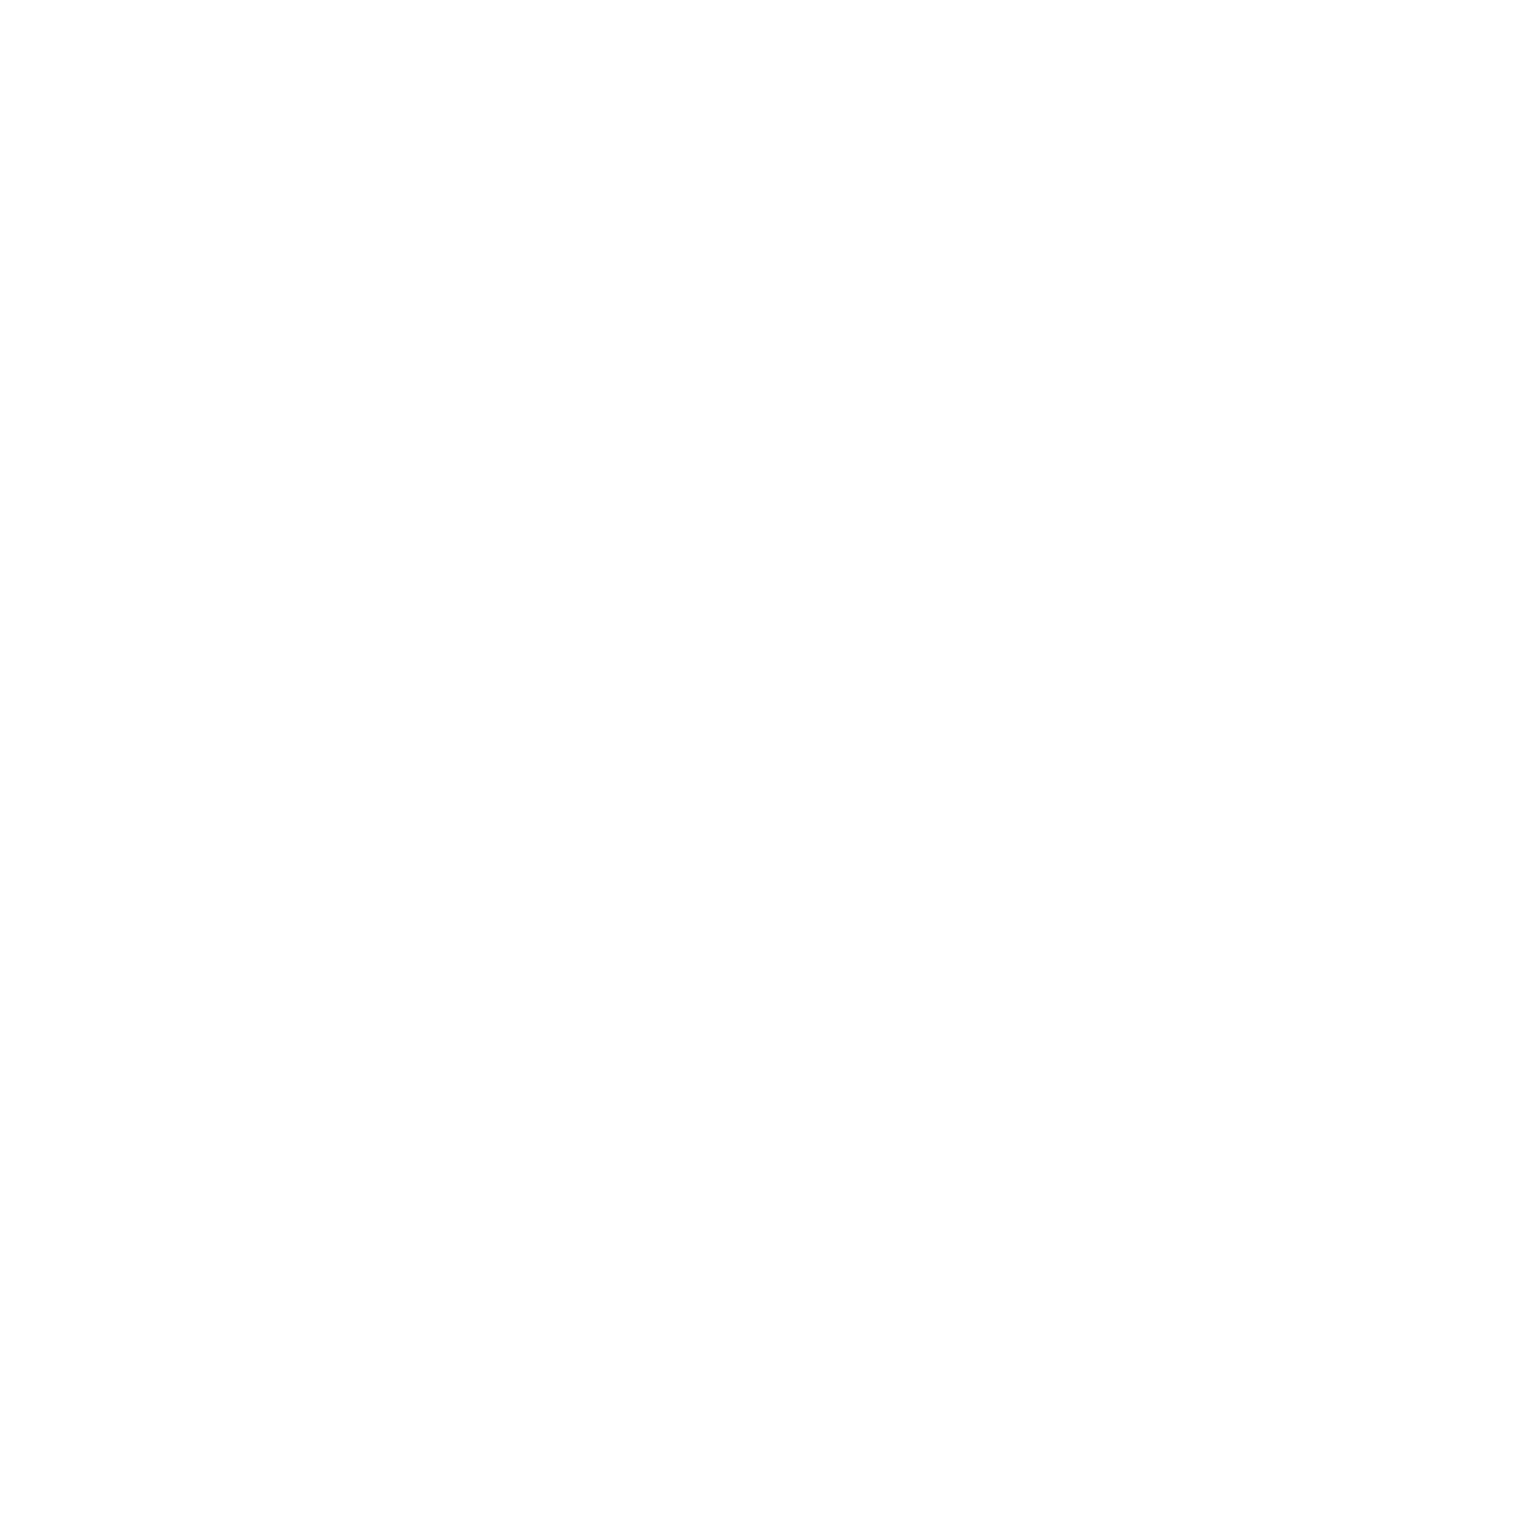 Mapfre logo pour fonds sombres (PNG transparent)